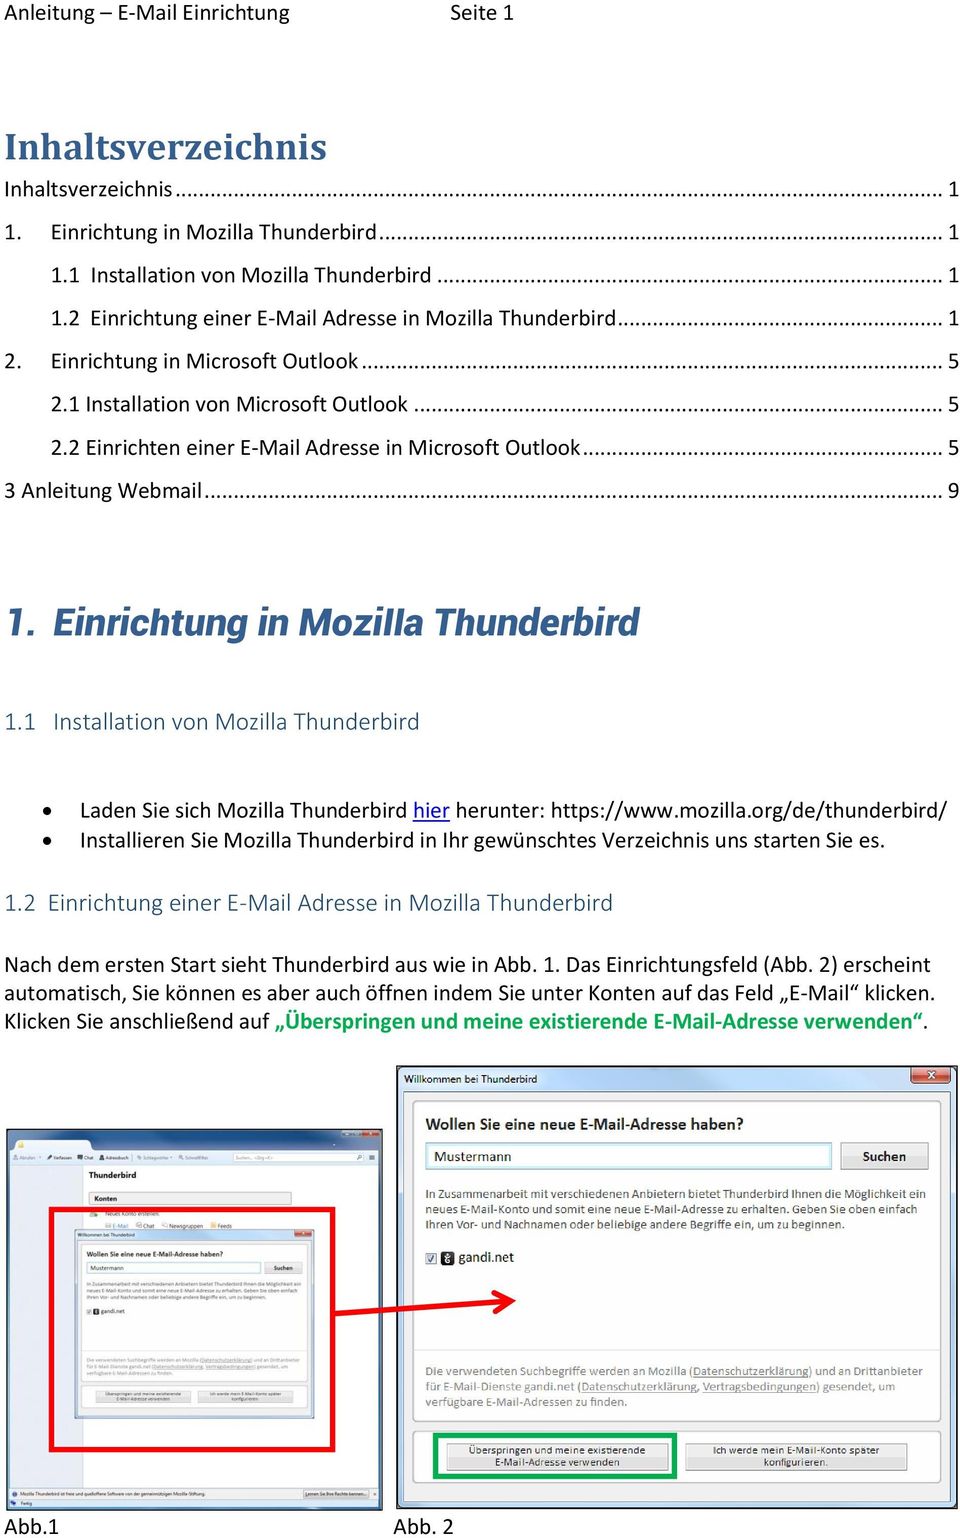 Einrichtung in Mozilla Thunderbird 1.1 Installation von Mozilla Thunderbird Laden Sie sich Mozilla Thunderbird hier herunter: https://www.mozilla.